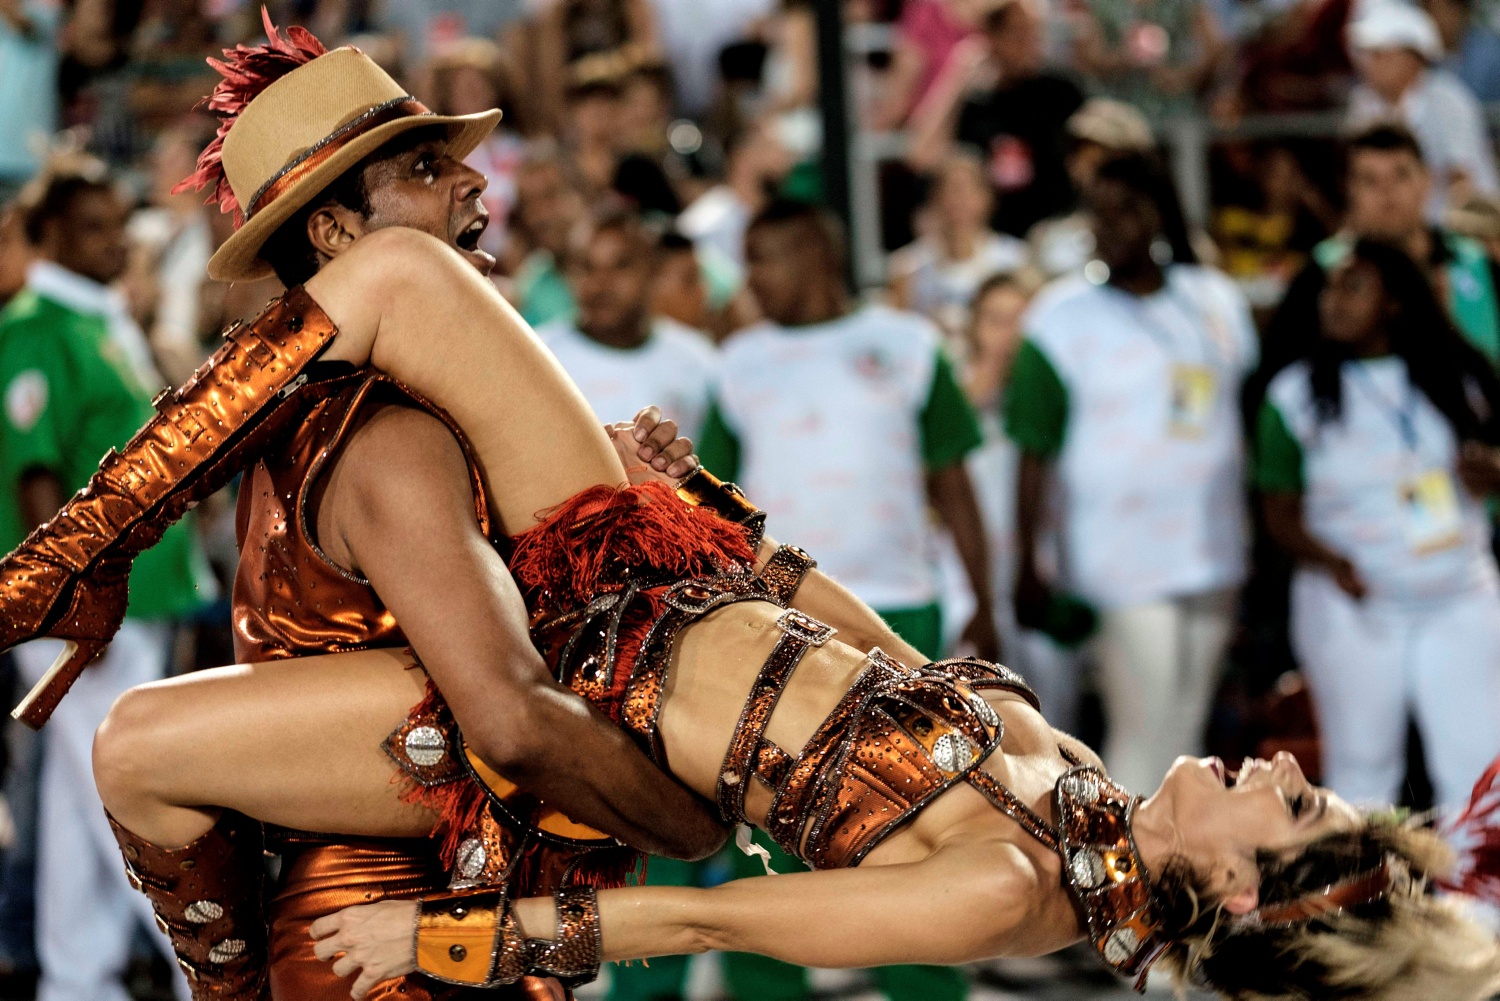 бразильские порно оргии на карнавале фото 41